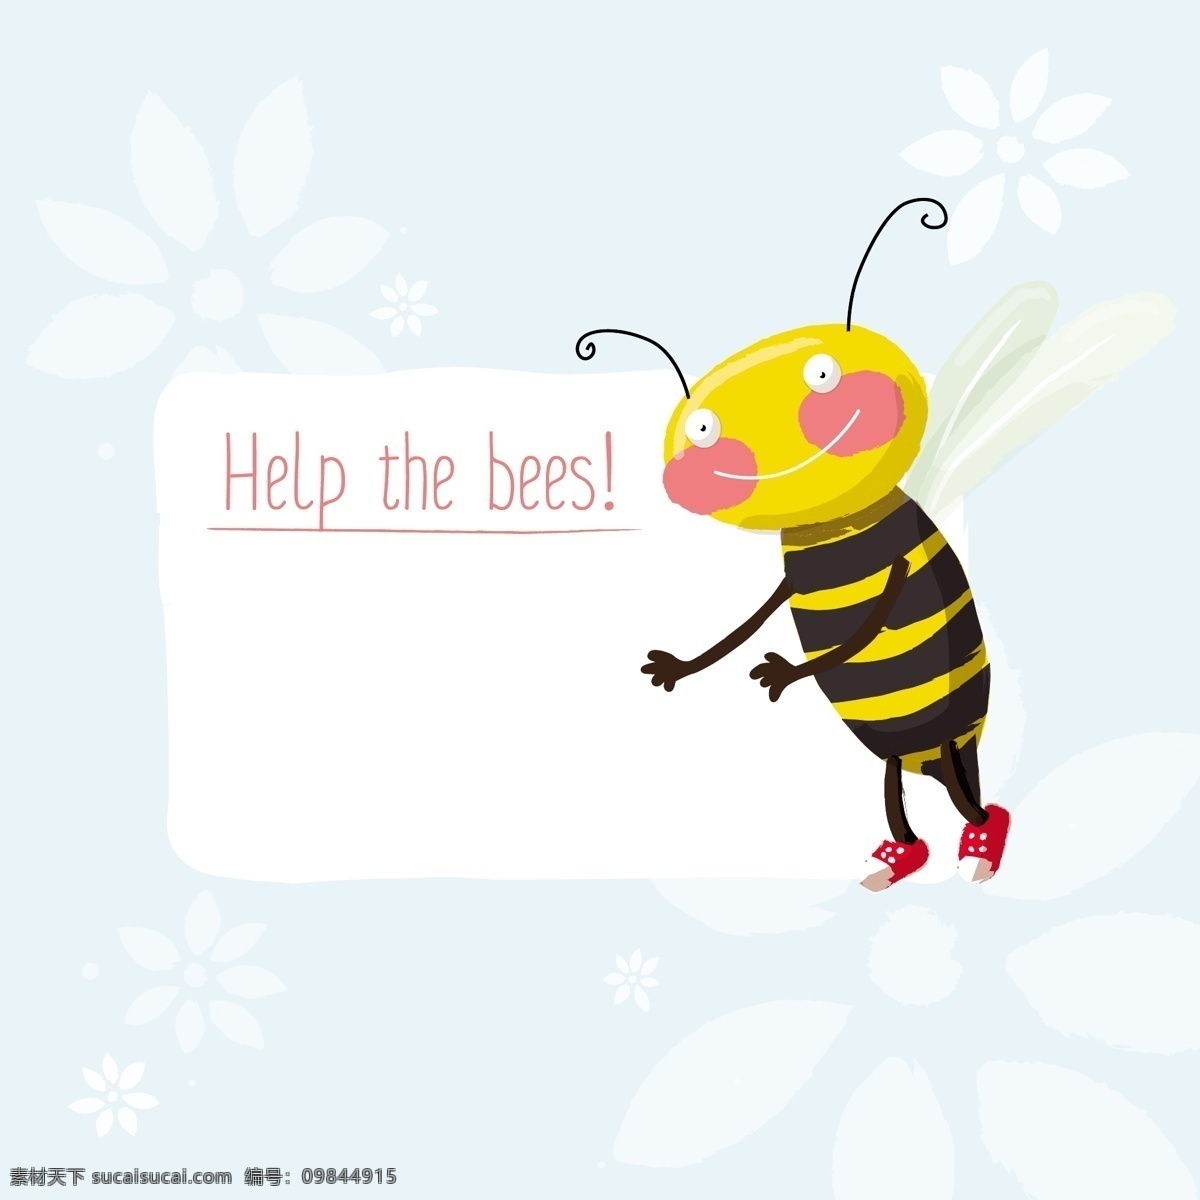 卡通 蜜蜂 背景 矢量 商业矢量 矢量下载 网页矢量 矢量动植物 矢量图 其他矢量图